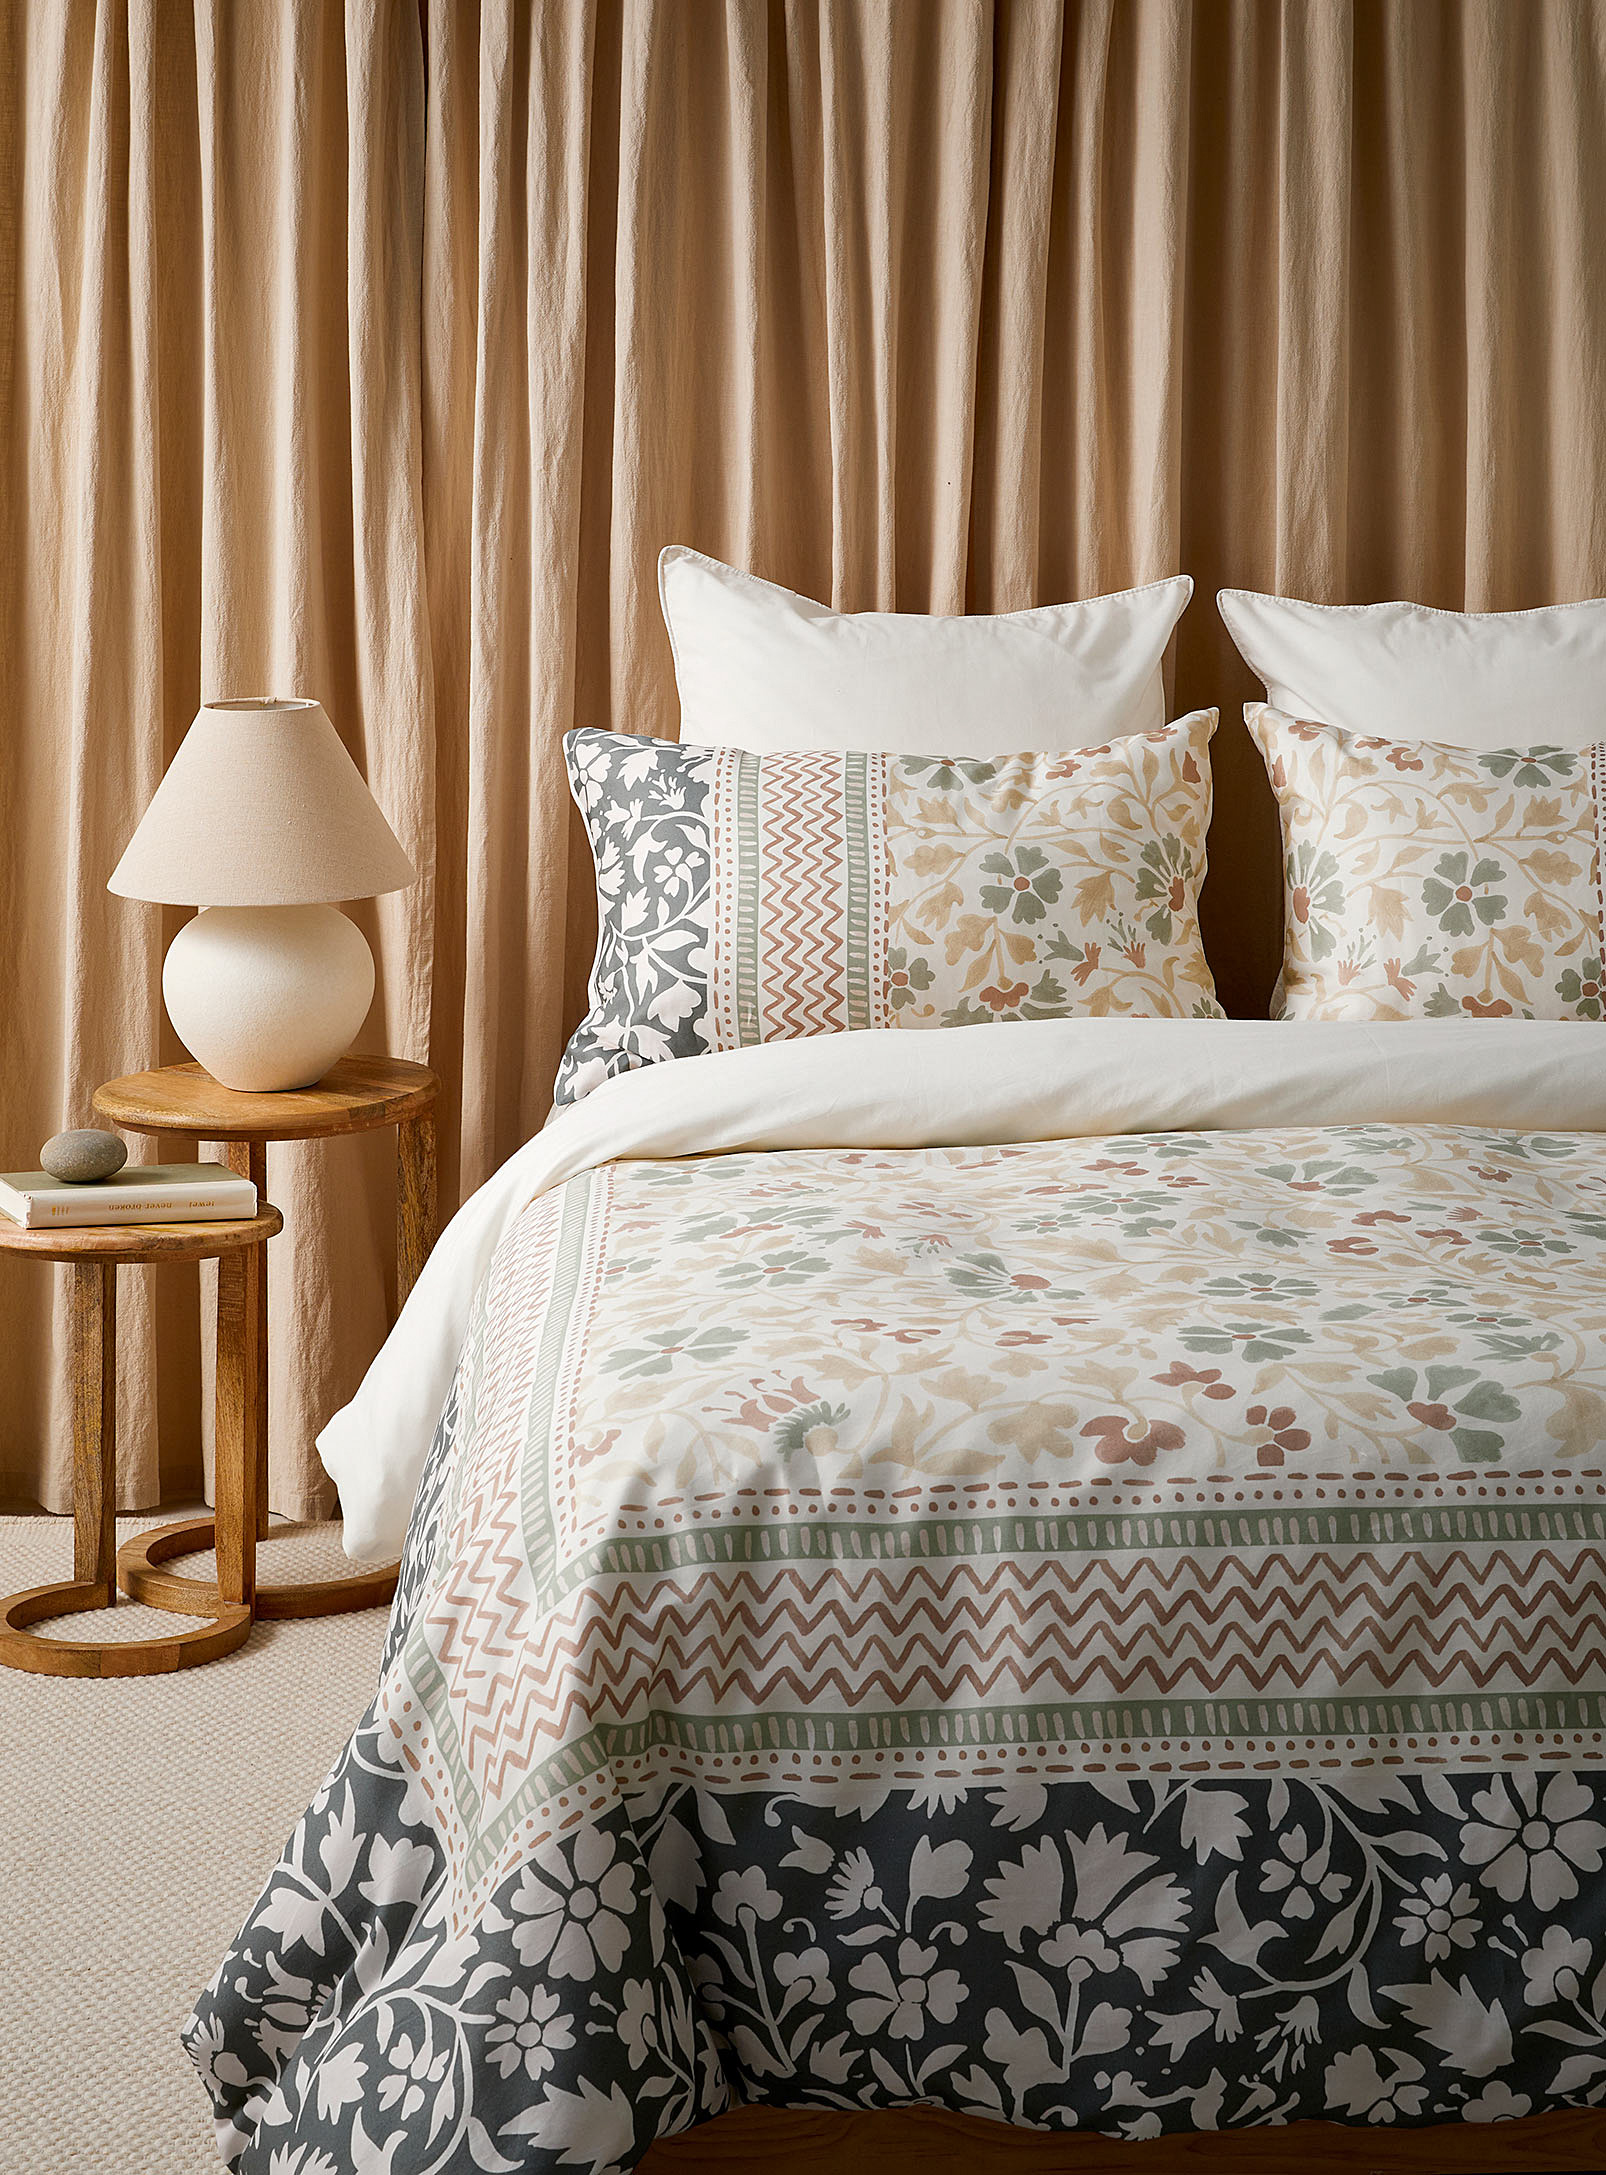 Linen House - Floral tableau duvet cover set